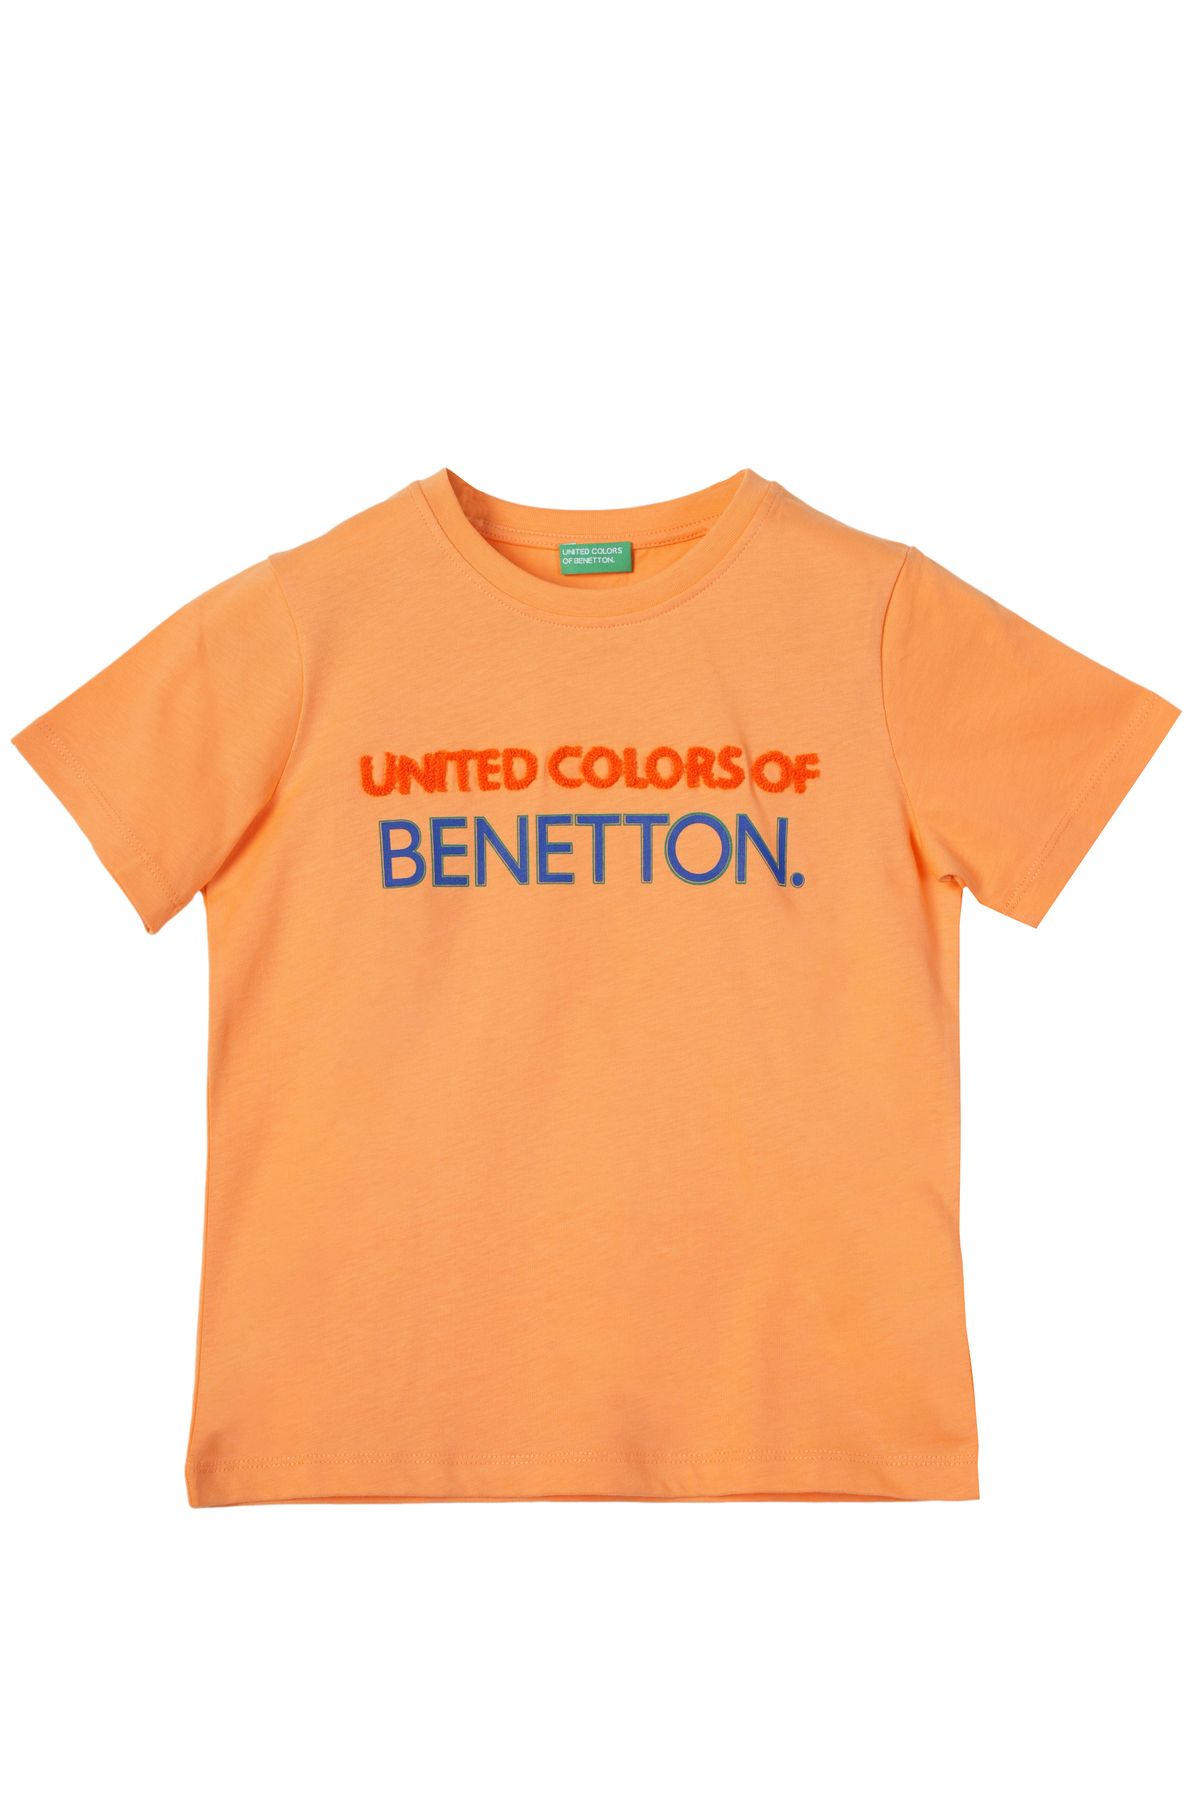 United Colors of Benetton Benetton Erkek Çocuk Tişört BNT-B21361